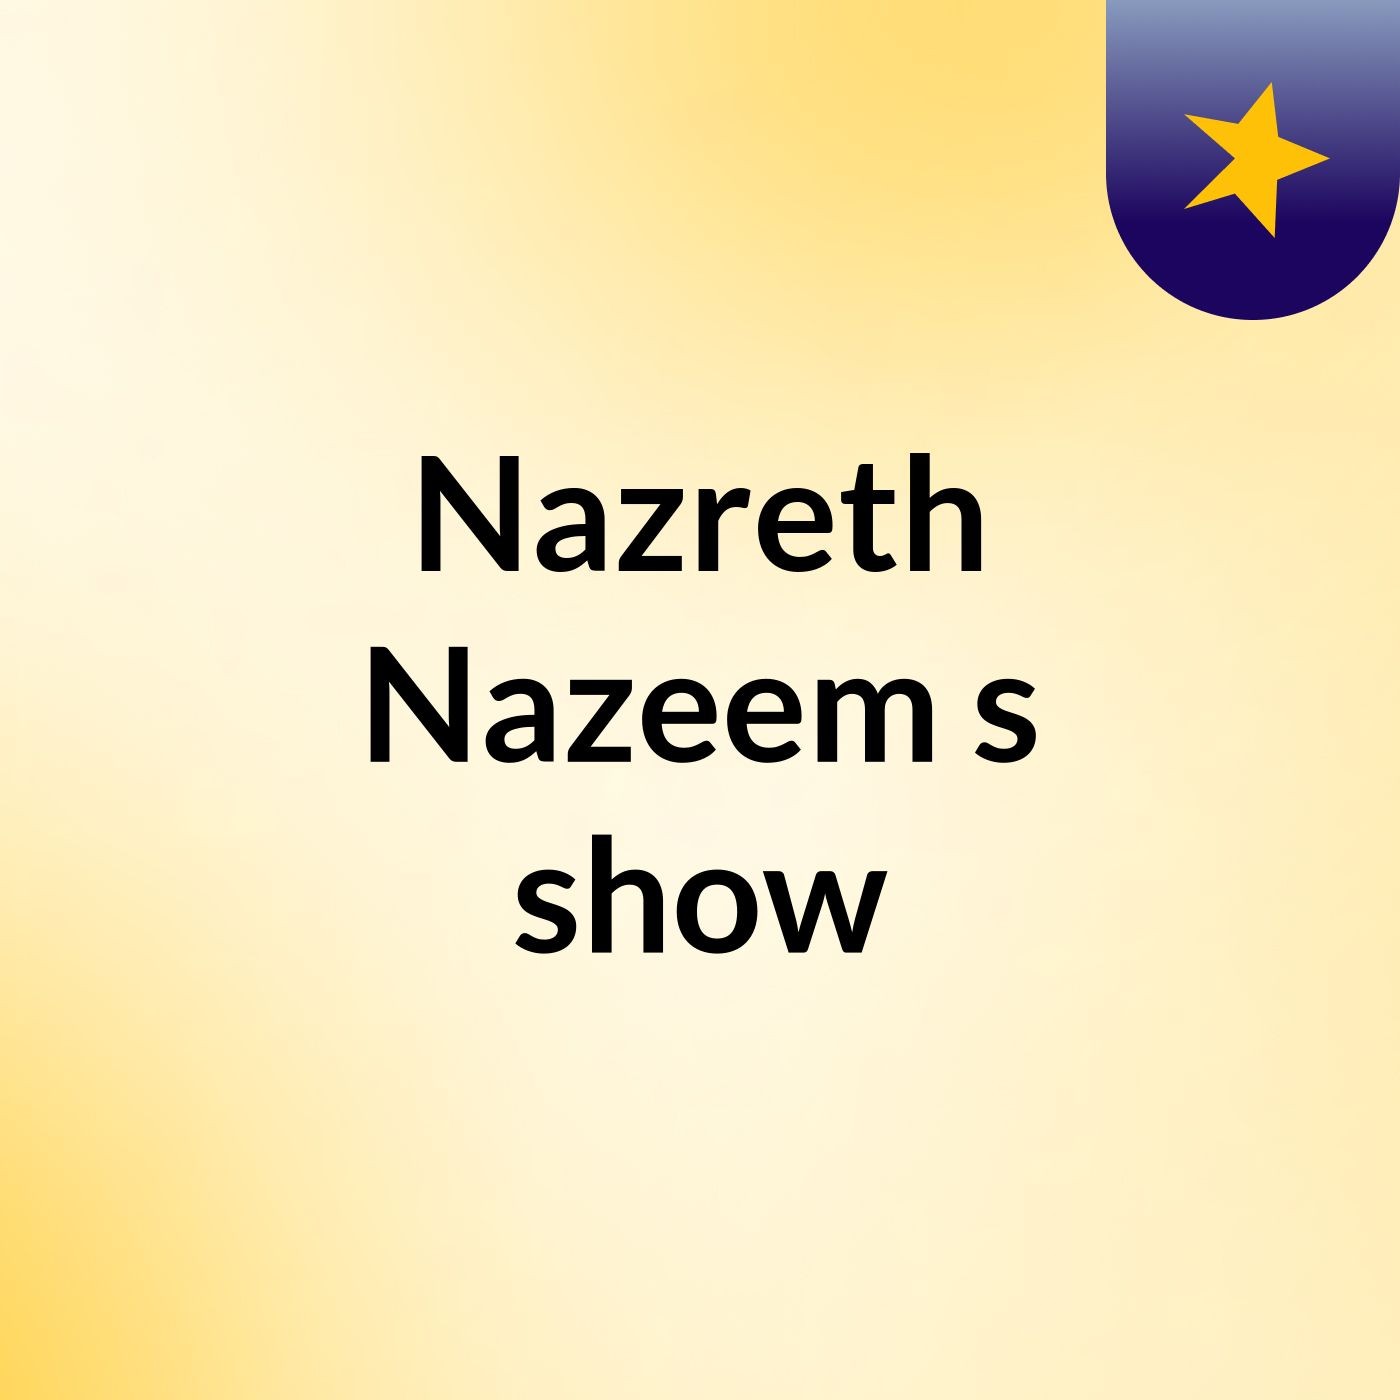 Nazreth Nazeem's show